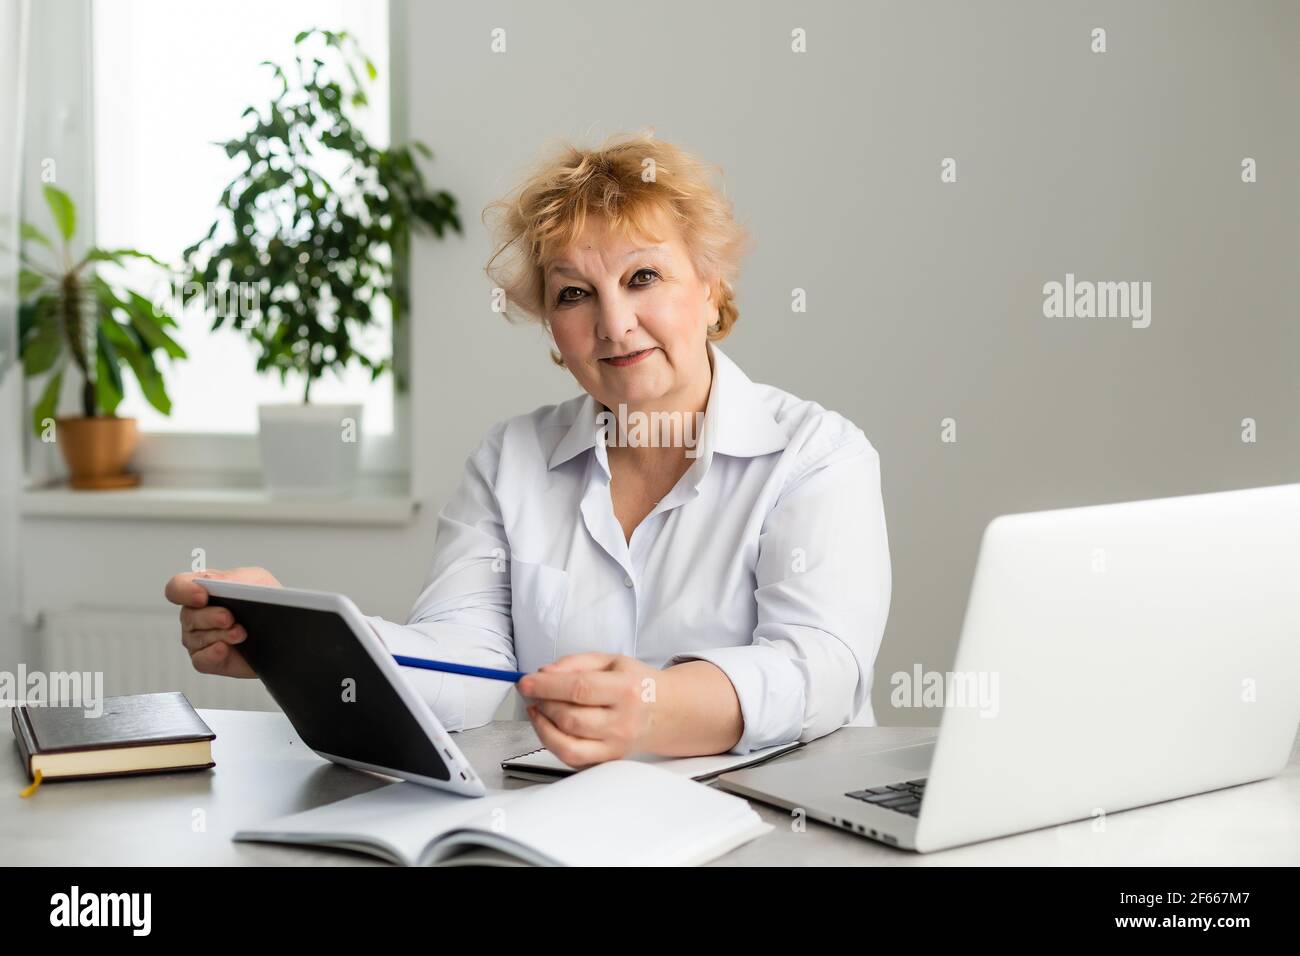 Donna anziana a casa davanti al suo computer portatile che prende appunti durante la visione di una lezione online di lingua inglese da parte di una insegnante di sesso femminile, concetto di e-learning. Foto Stock